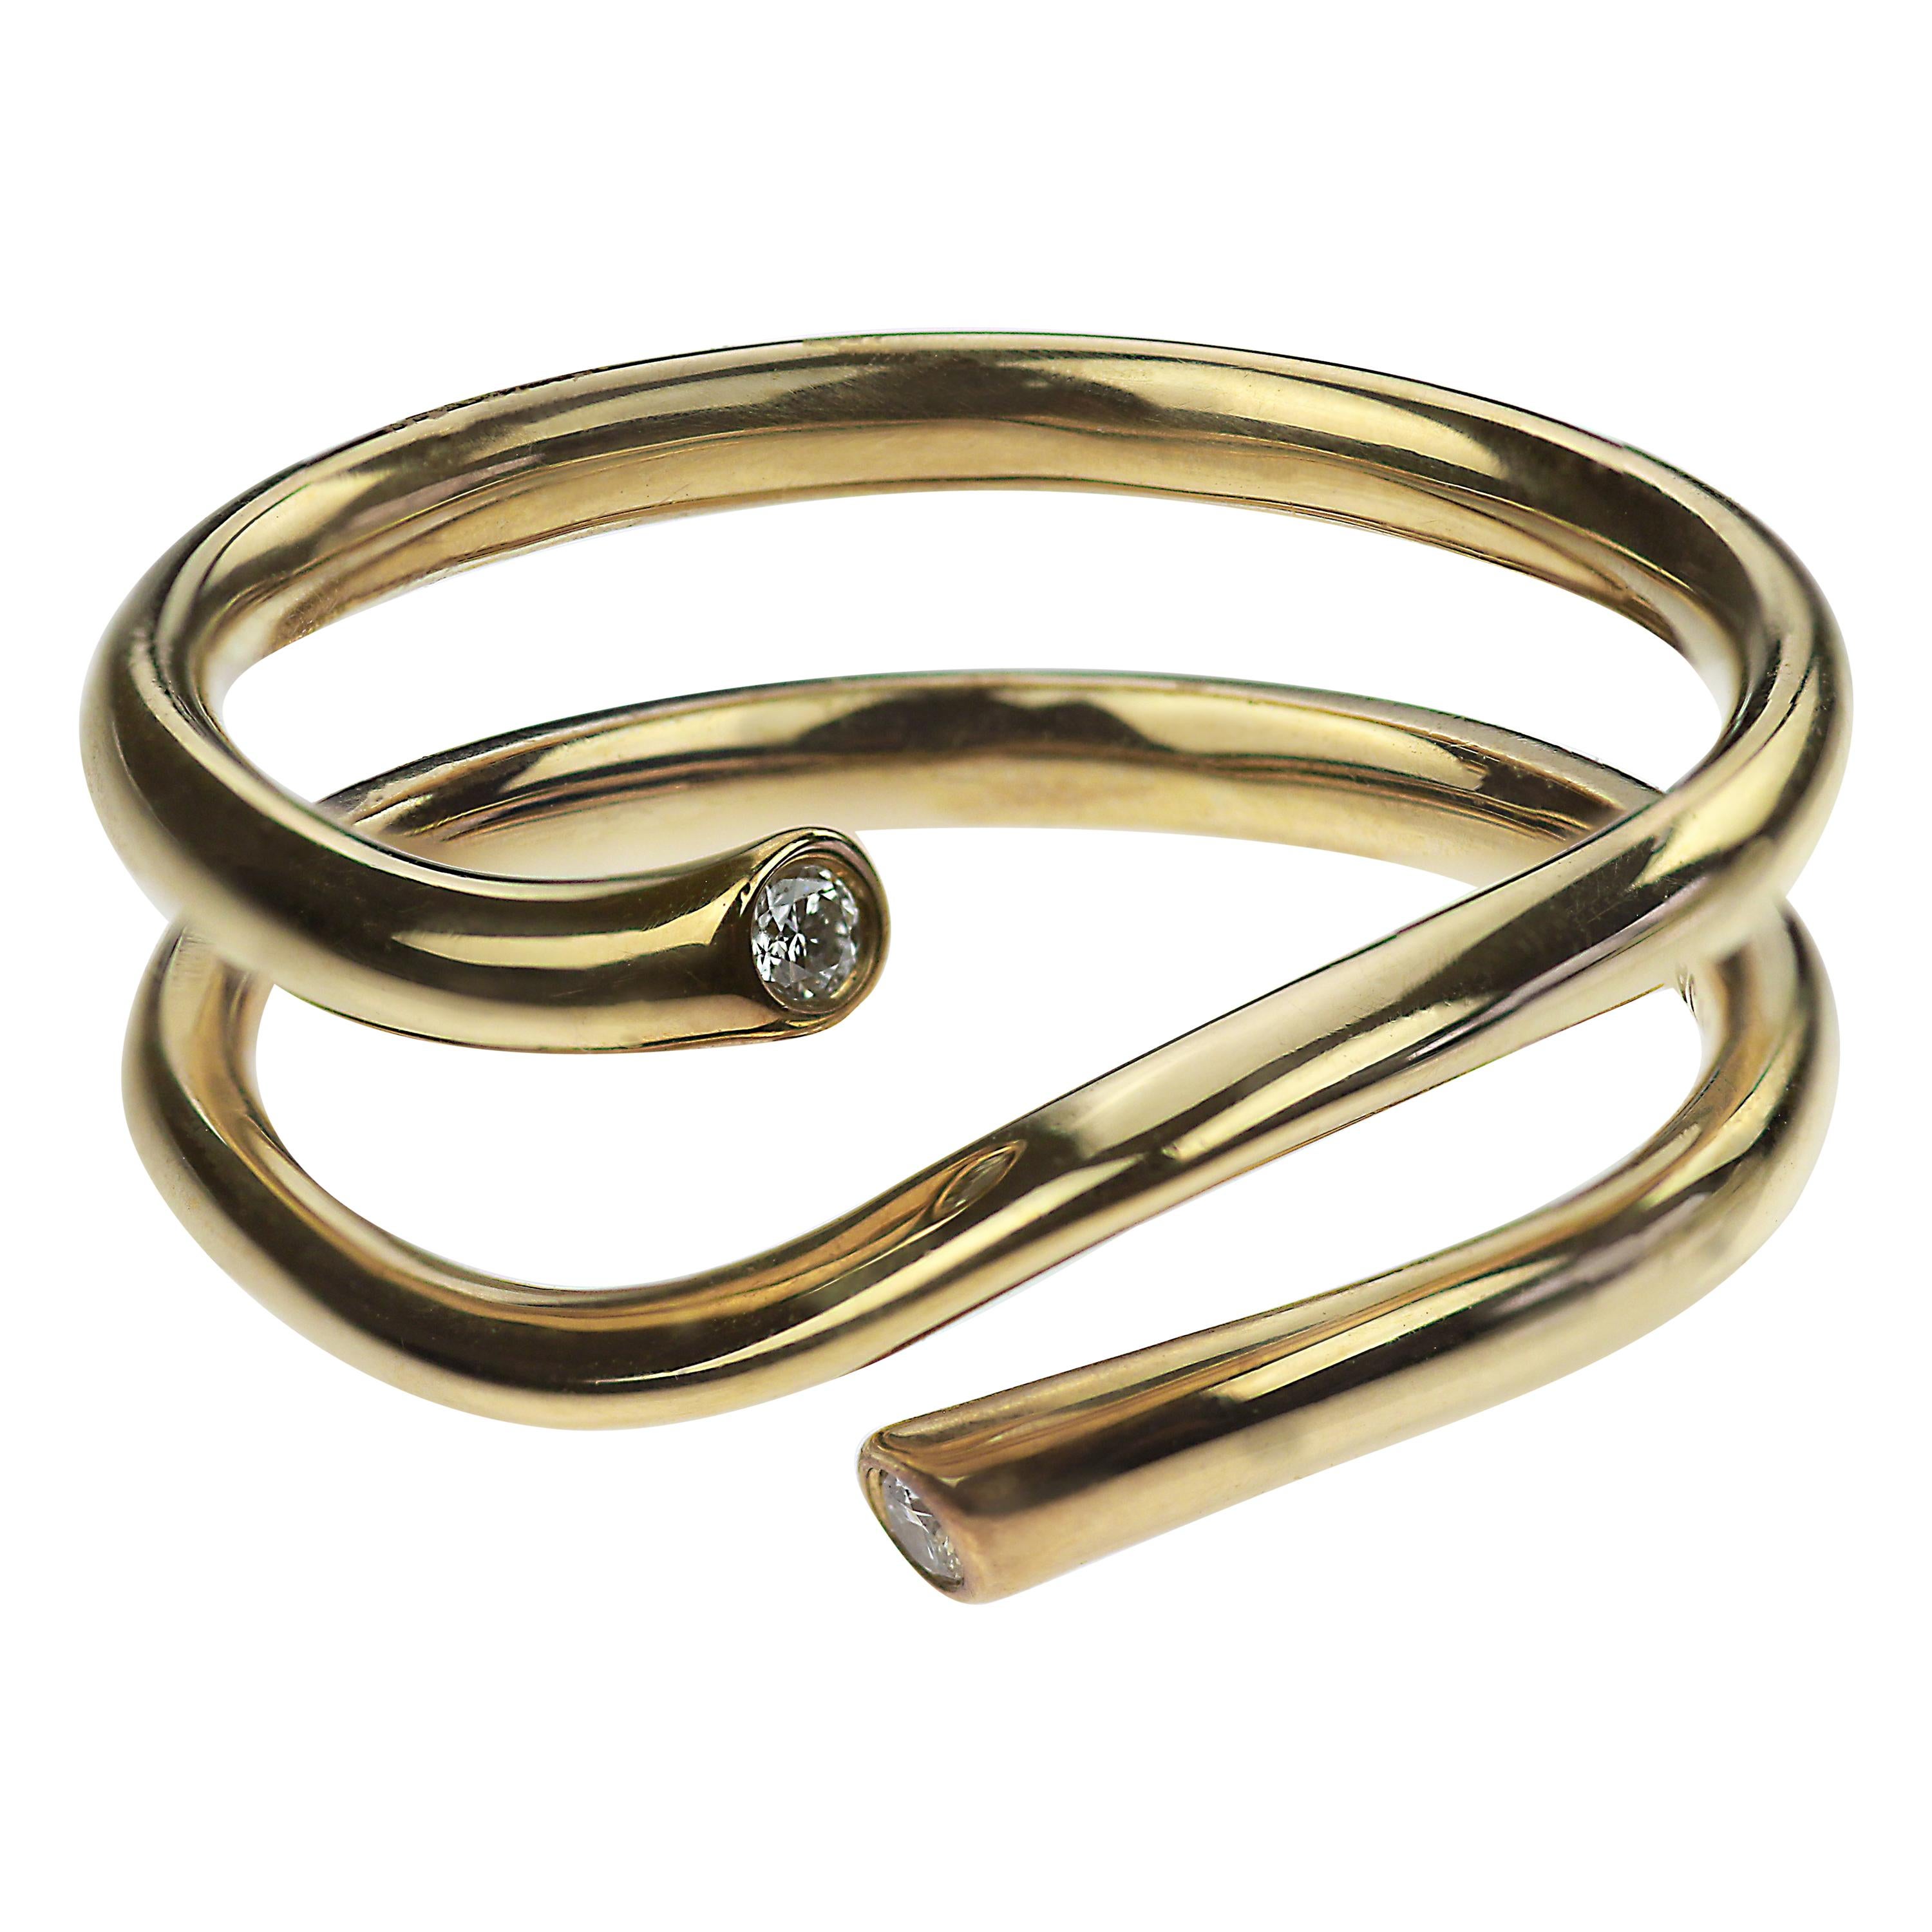 Georg Jensen Diamond Set Magic Ring in 18 Carat Yellow Gold